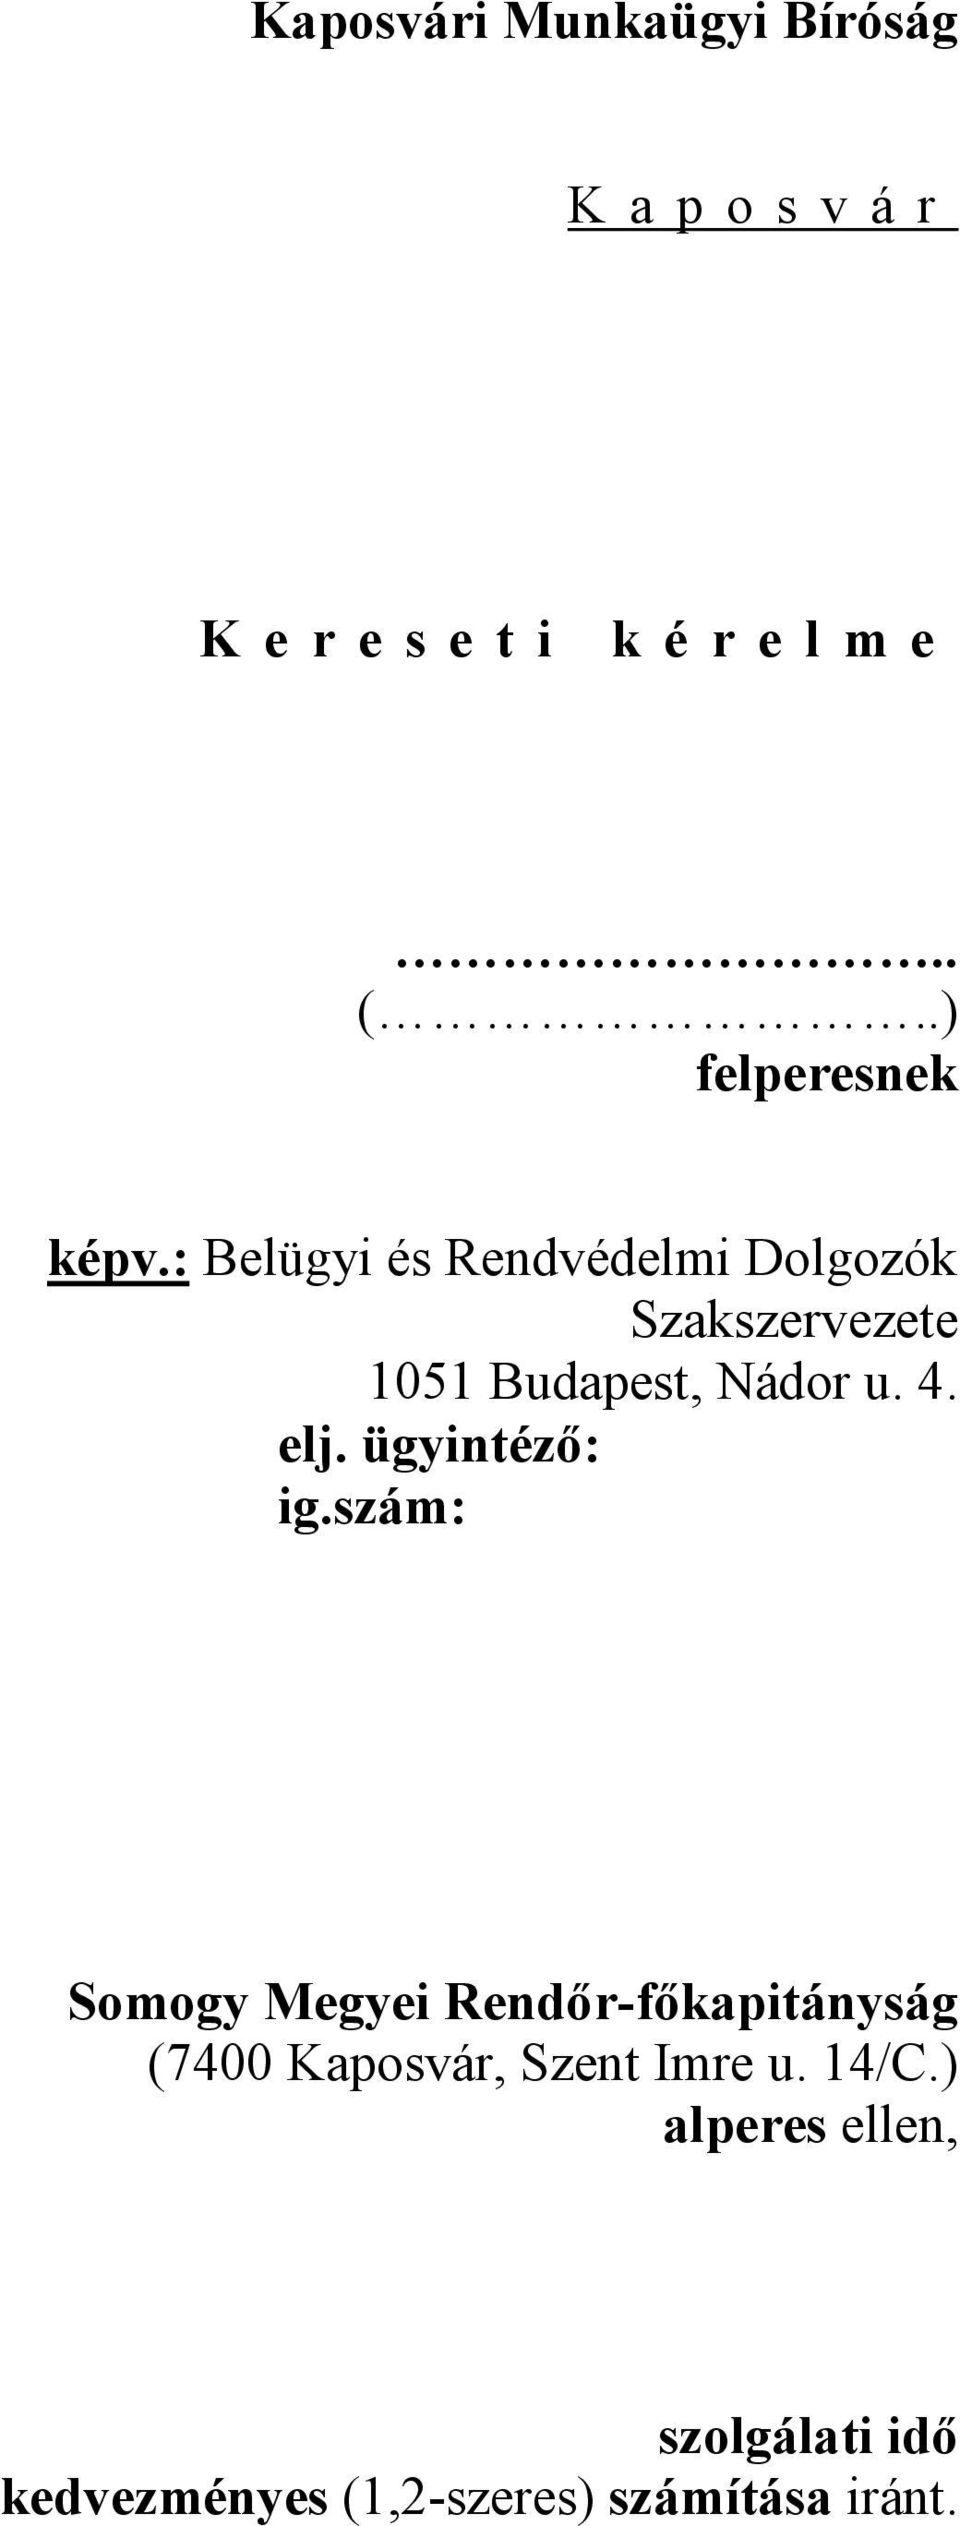 : Belügyi és Rendvédelmi Dolgozók Szakszervezete 1051 Budapest, Nádor u. 4. elj.